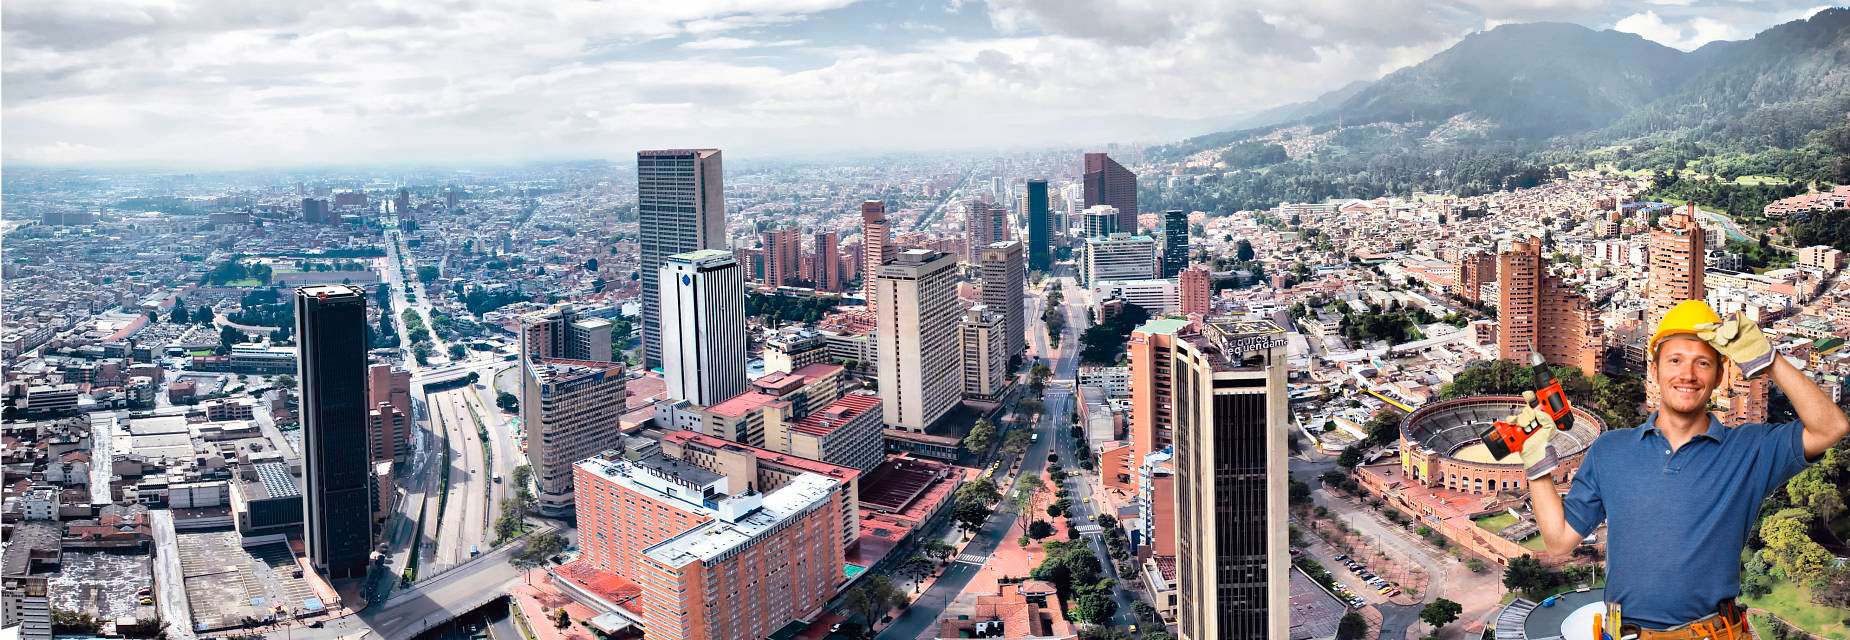 Servicio de instalacion de televisores en la ciudad de Bogota